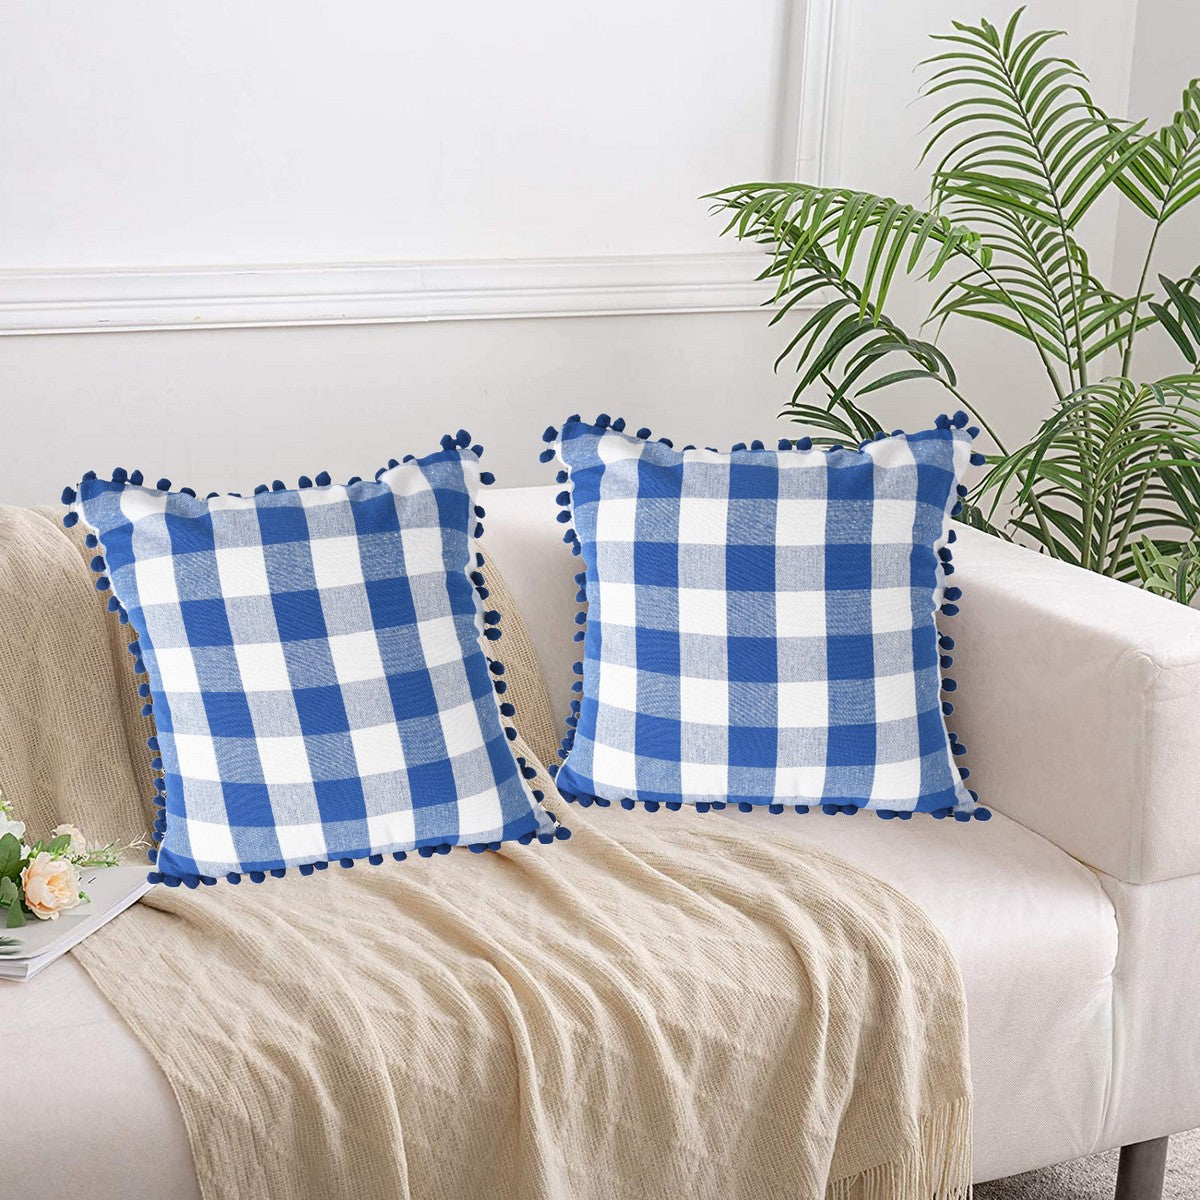 Lushomes Square Cushion Cover with Pom Pom, Cotton Sofa Pillow Cover Set of 2, 20x20 Inch, Big Checks, Blue and White Checks, Pillow Cushions Covers (Pack of 2, 50x50 Cms)